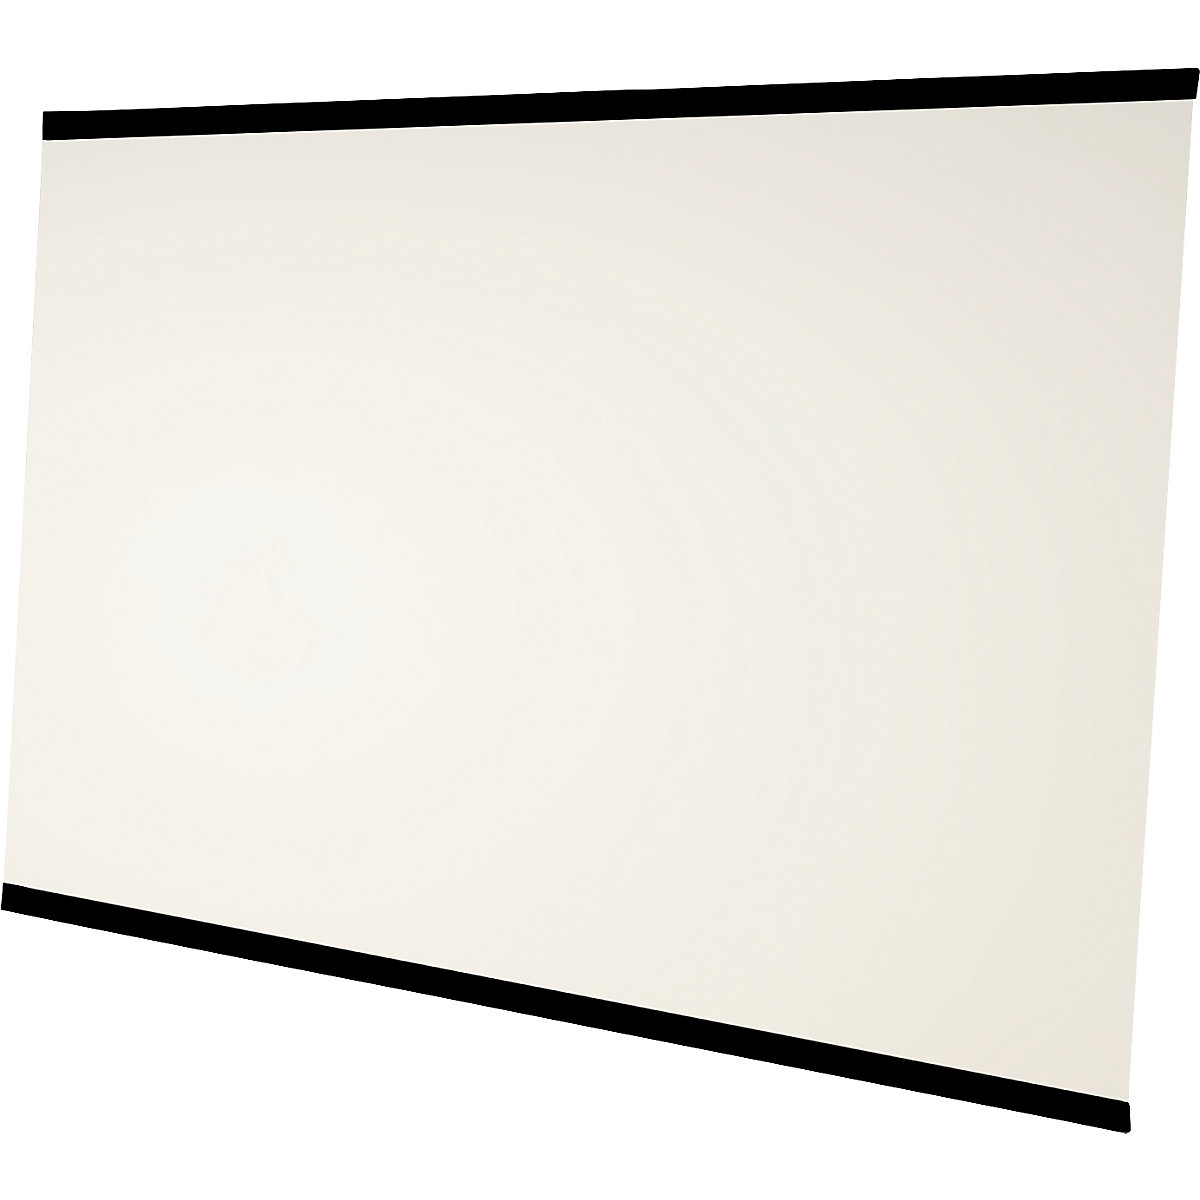 LEAN WALL whiteboard, frameless – Chameleon, enamelled, white, WxH 2940 x 2216 mm, 3 panels-8